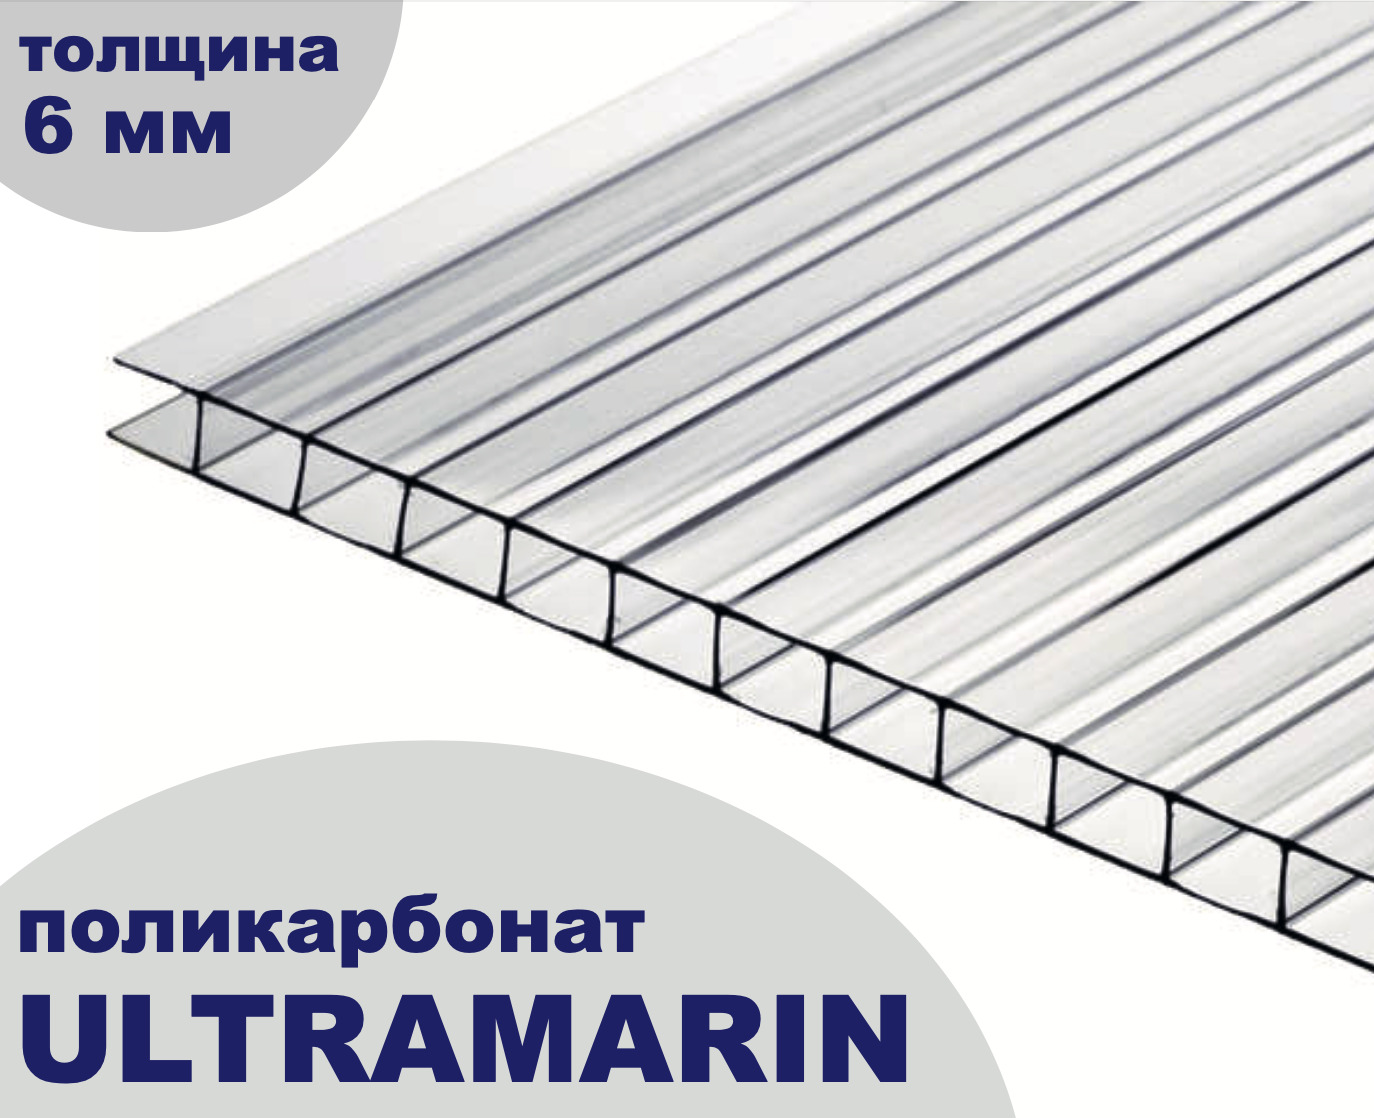 Поликарбонат сотовый для теплиц Plastilux Ultramarin прозрачный, 6 мм, 12 метров, 3 листа